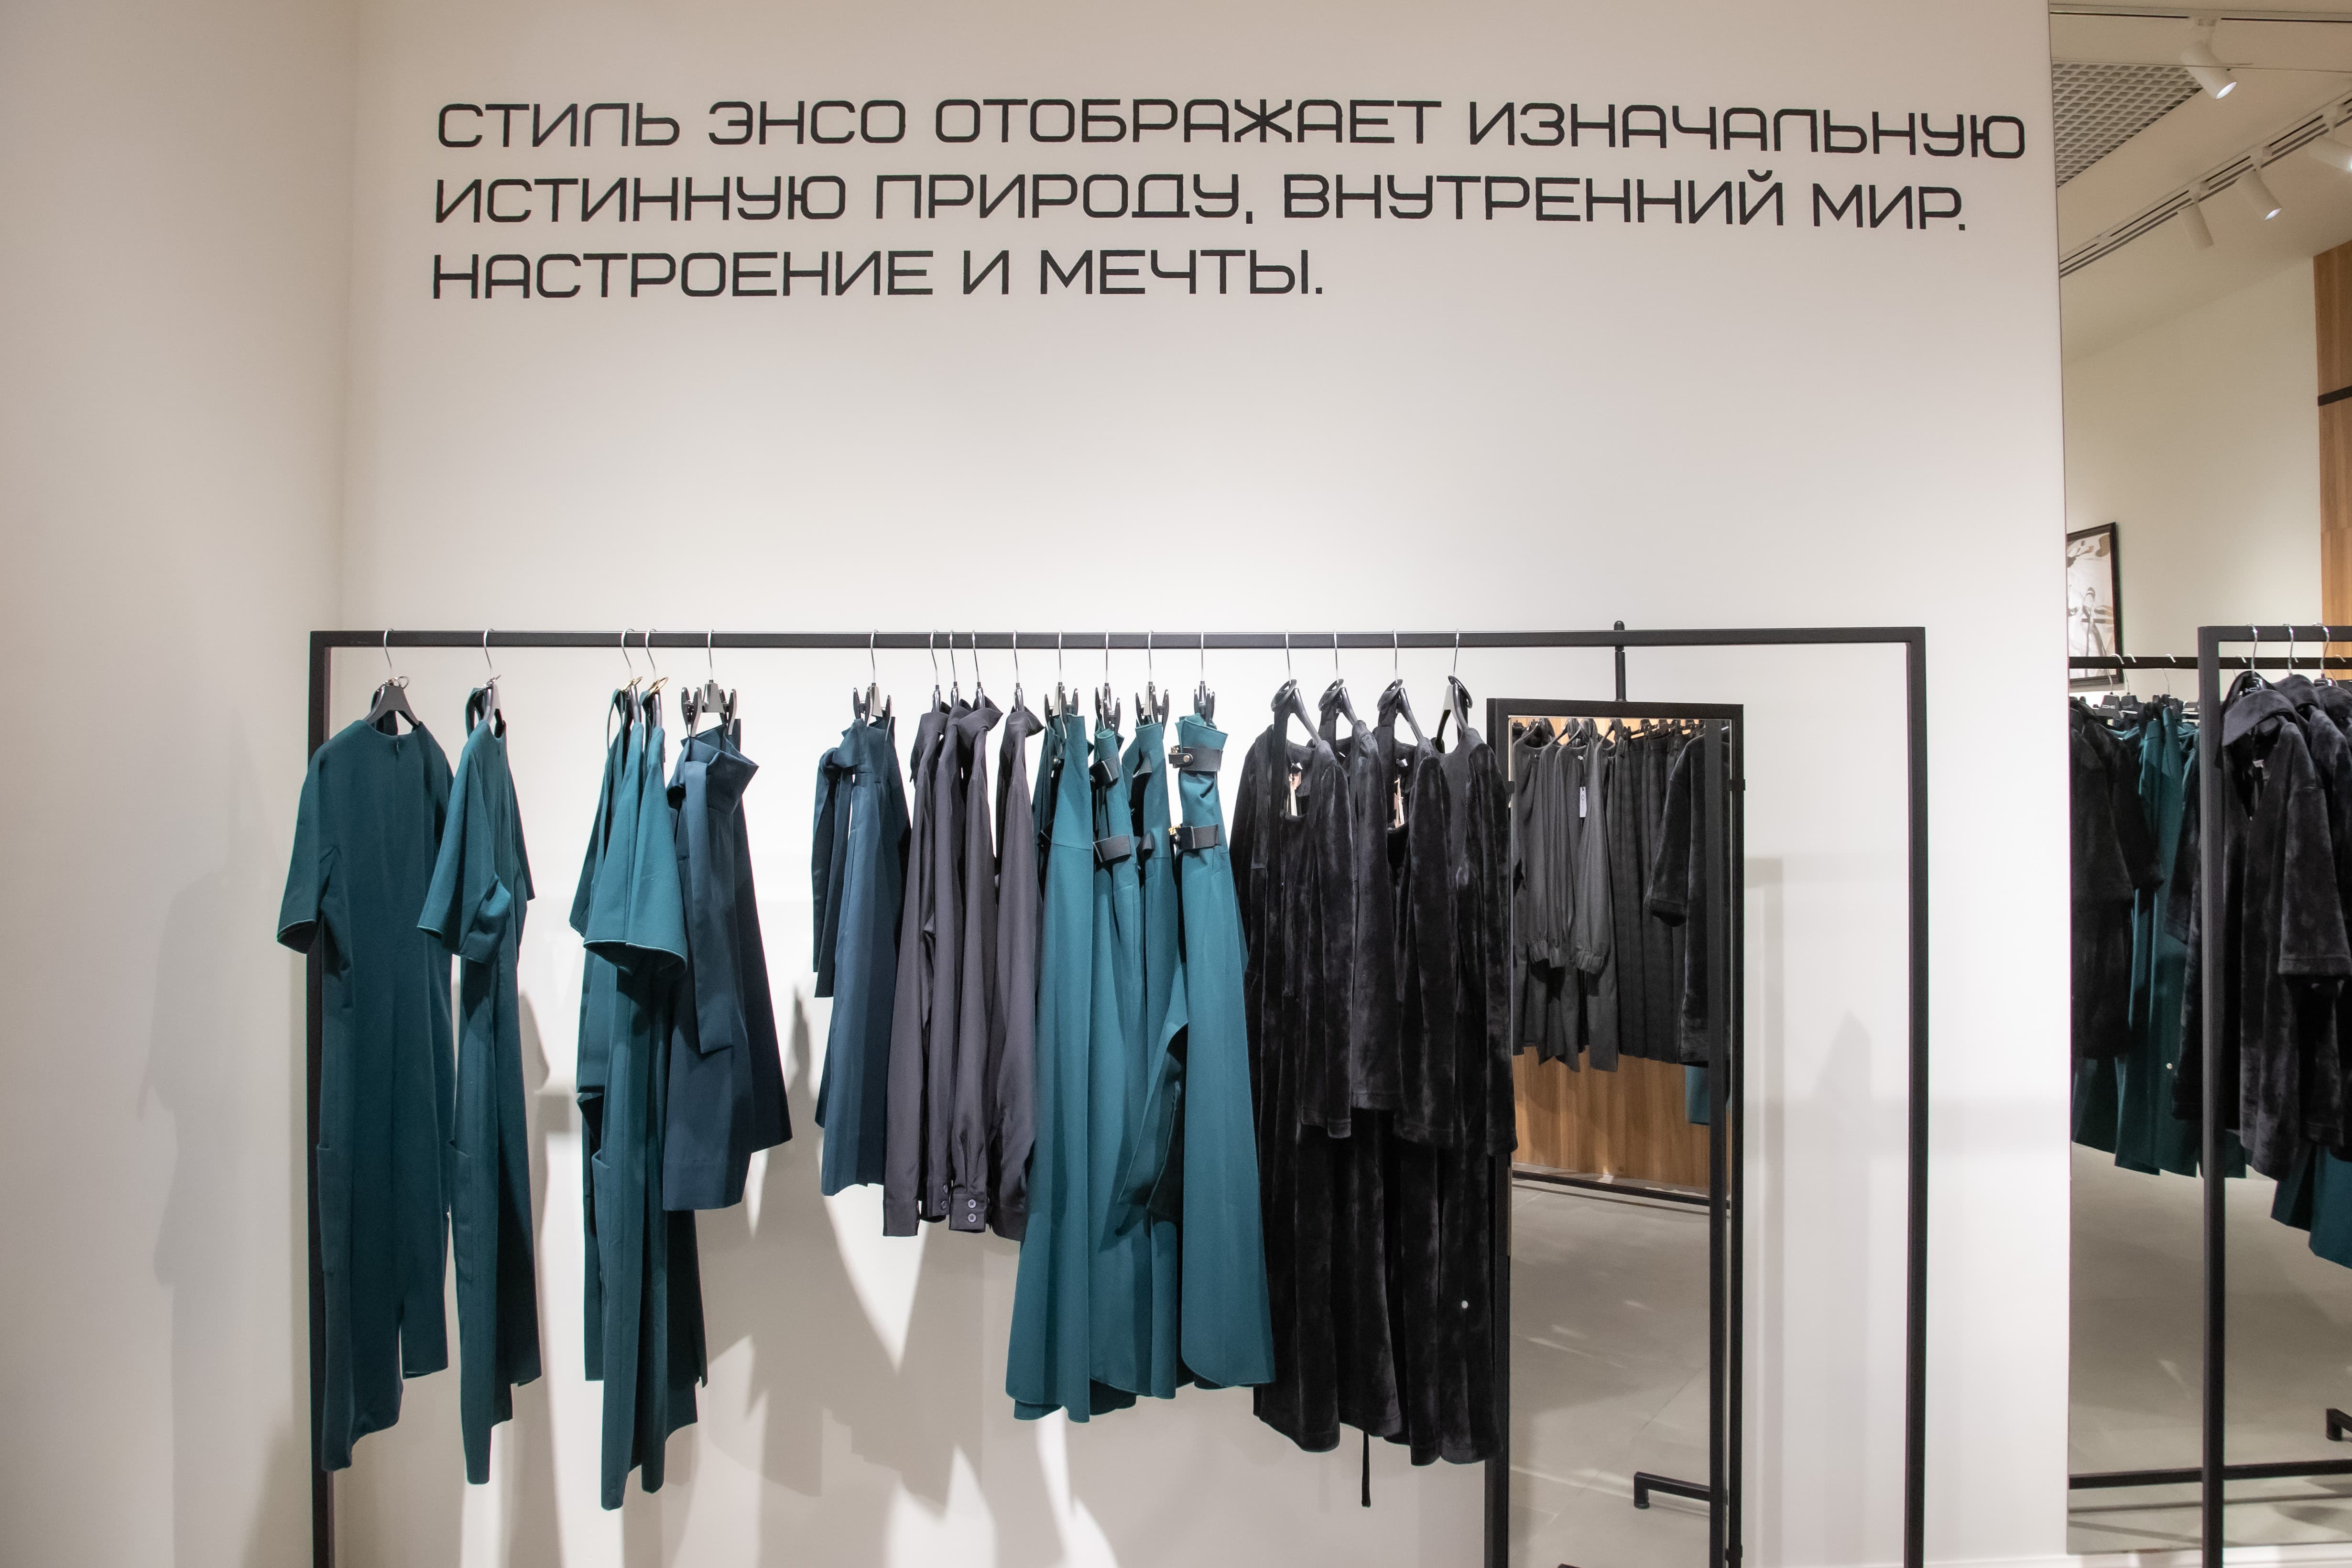 Почему нужно сохранить российское производство одежды